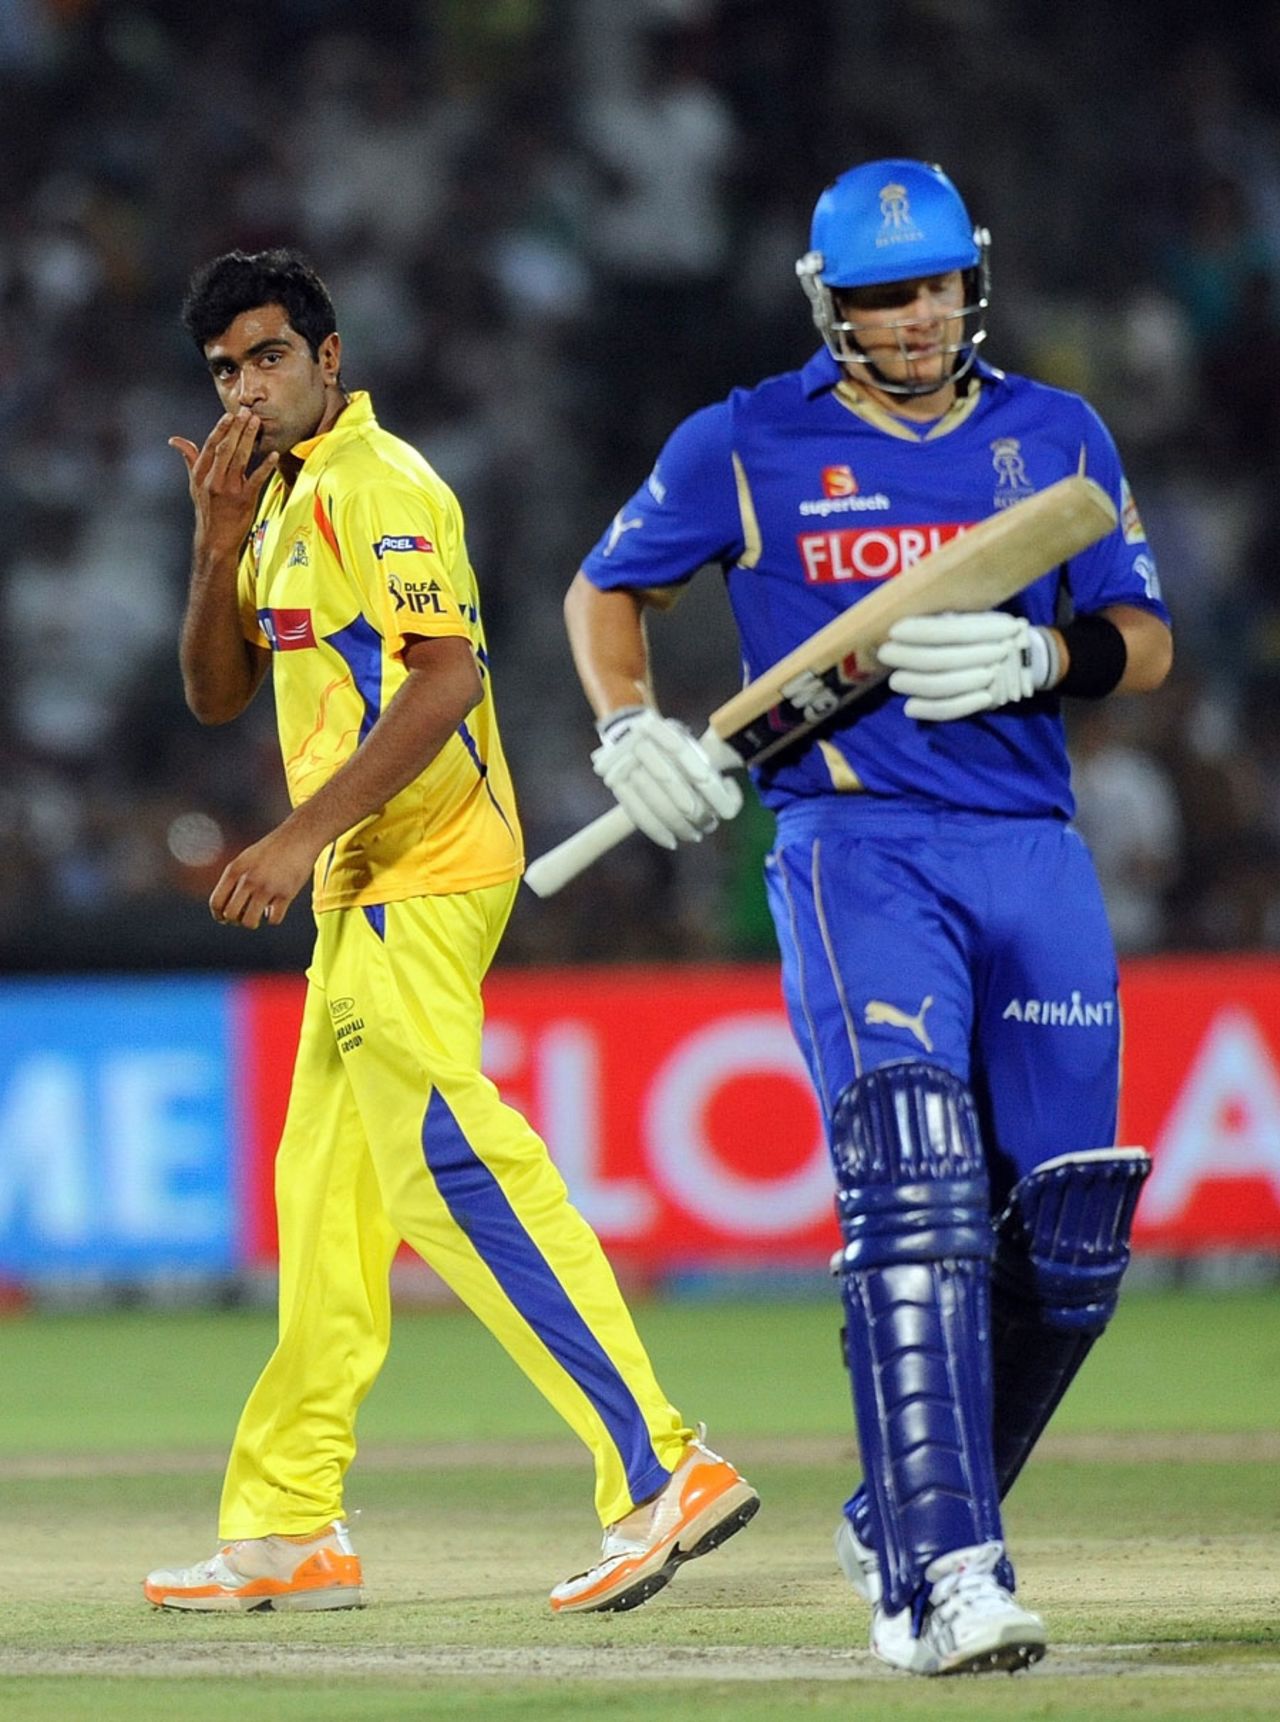 R Ashwin sent Shane Watson back for 11, Rajasthan v Chennai, IPL 2011, Jaipur, May 9, 2011